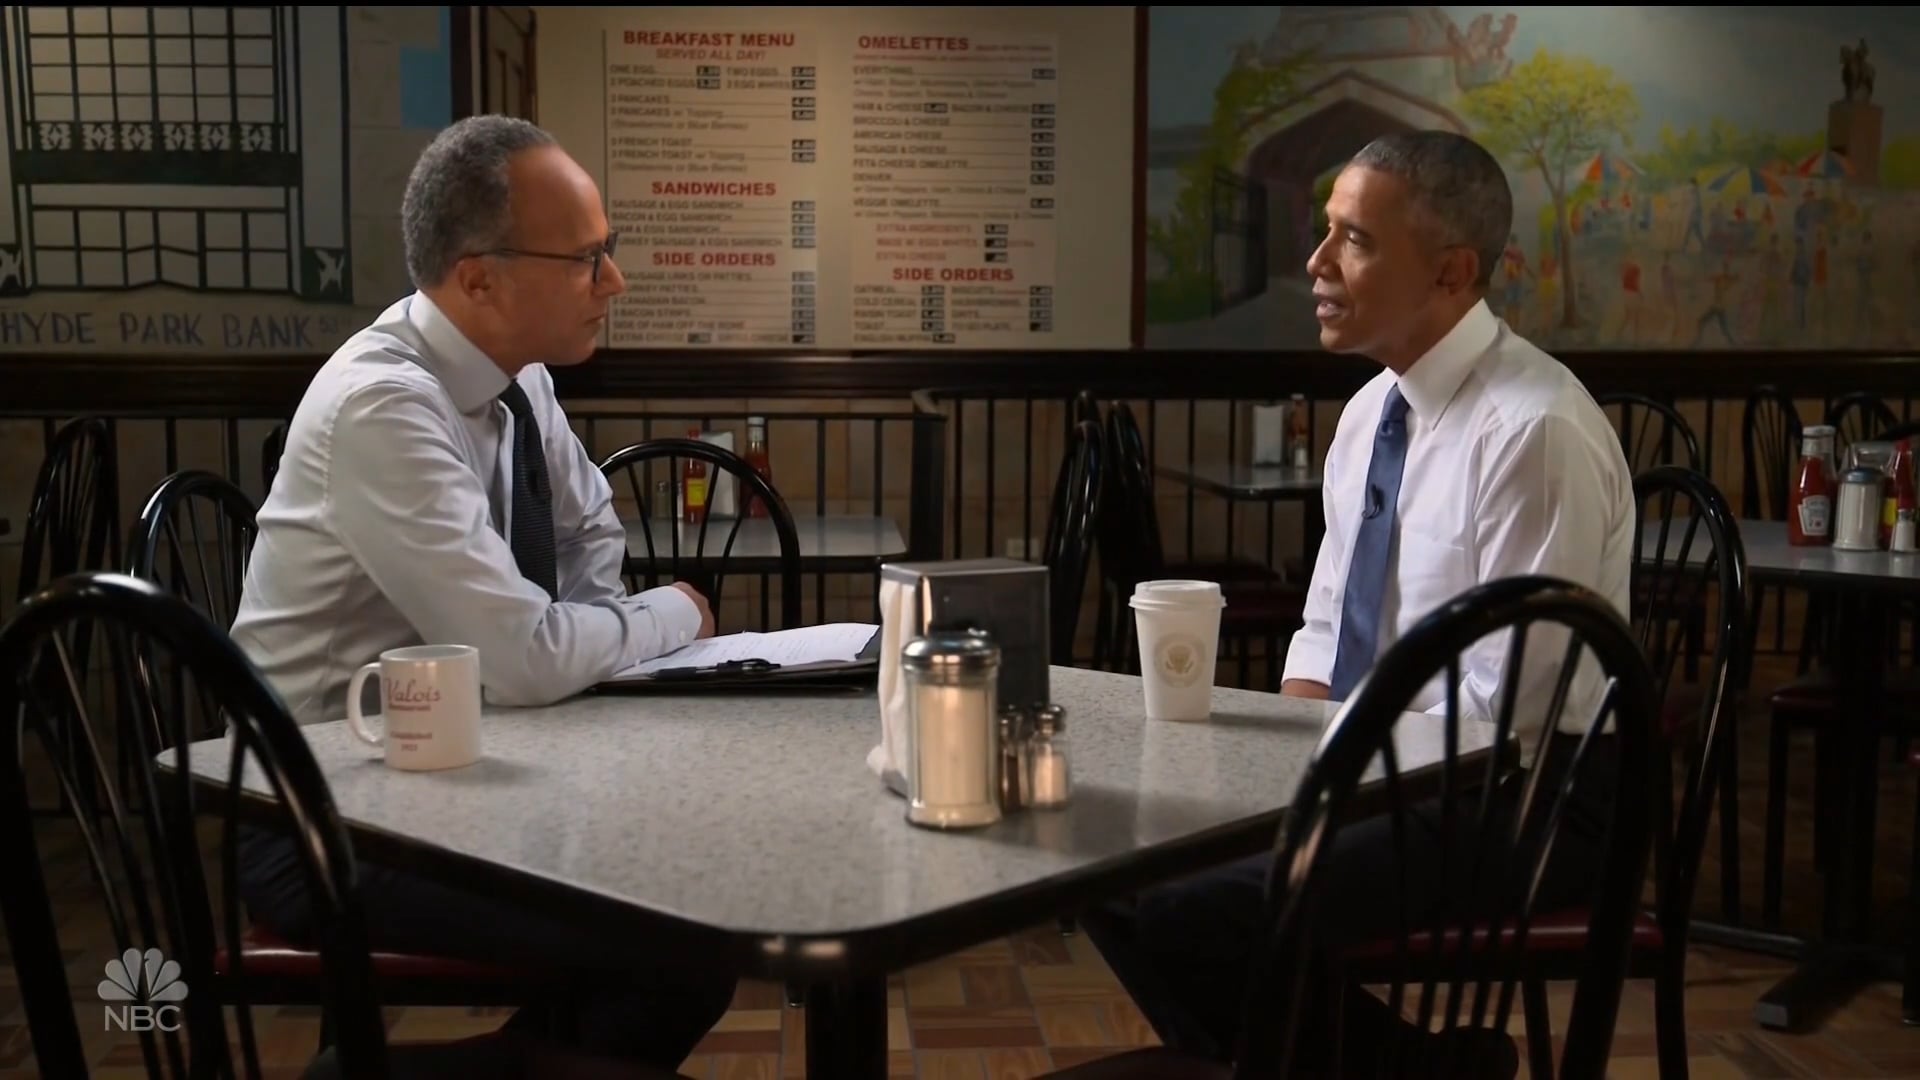 NBC | Dateline | Barack Obama "The Reality of Hope" 'Open'